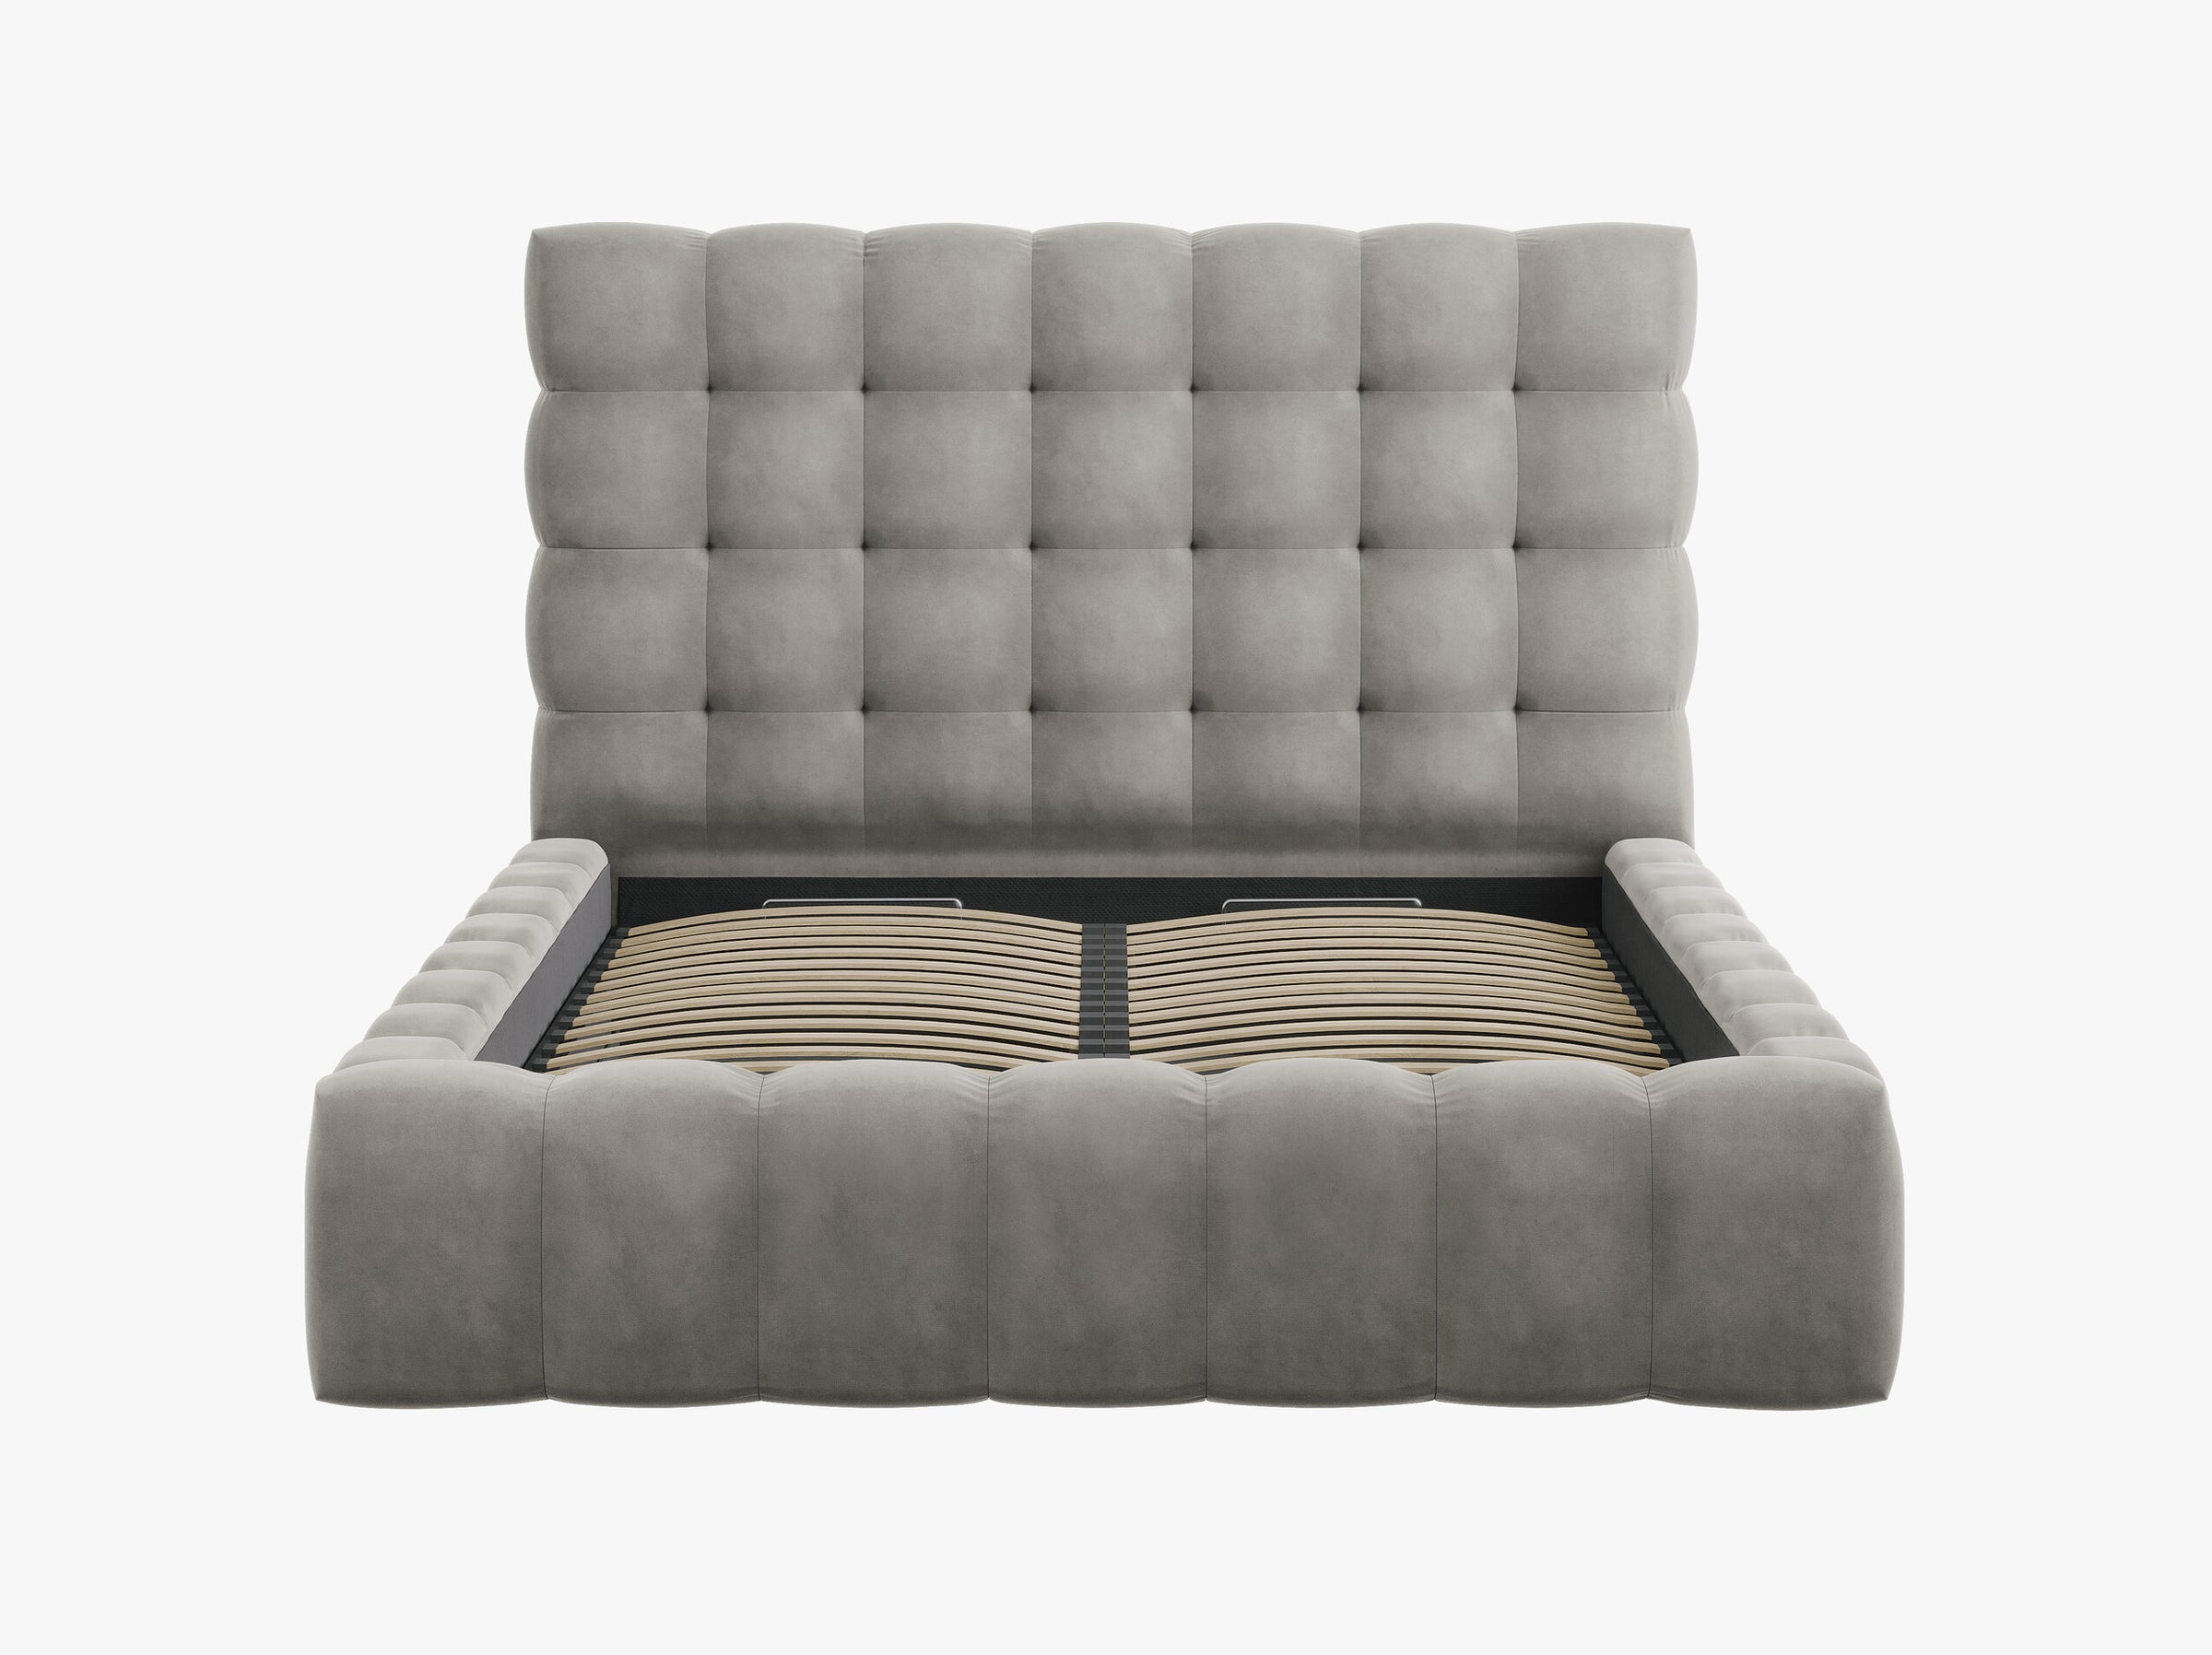 Mamaia beds & mattresses velvet light grey